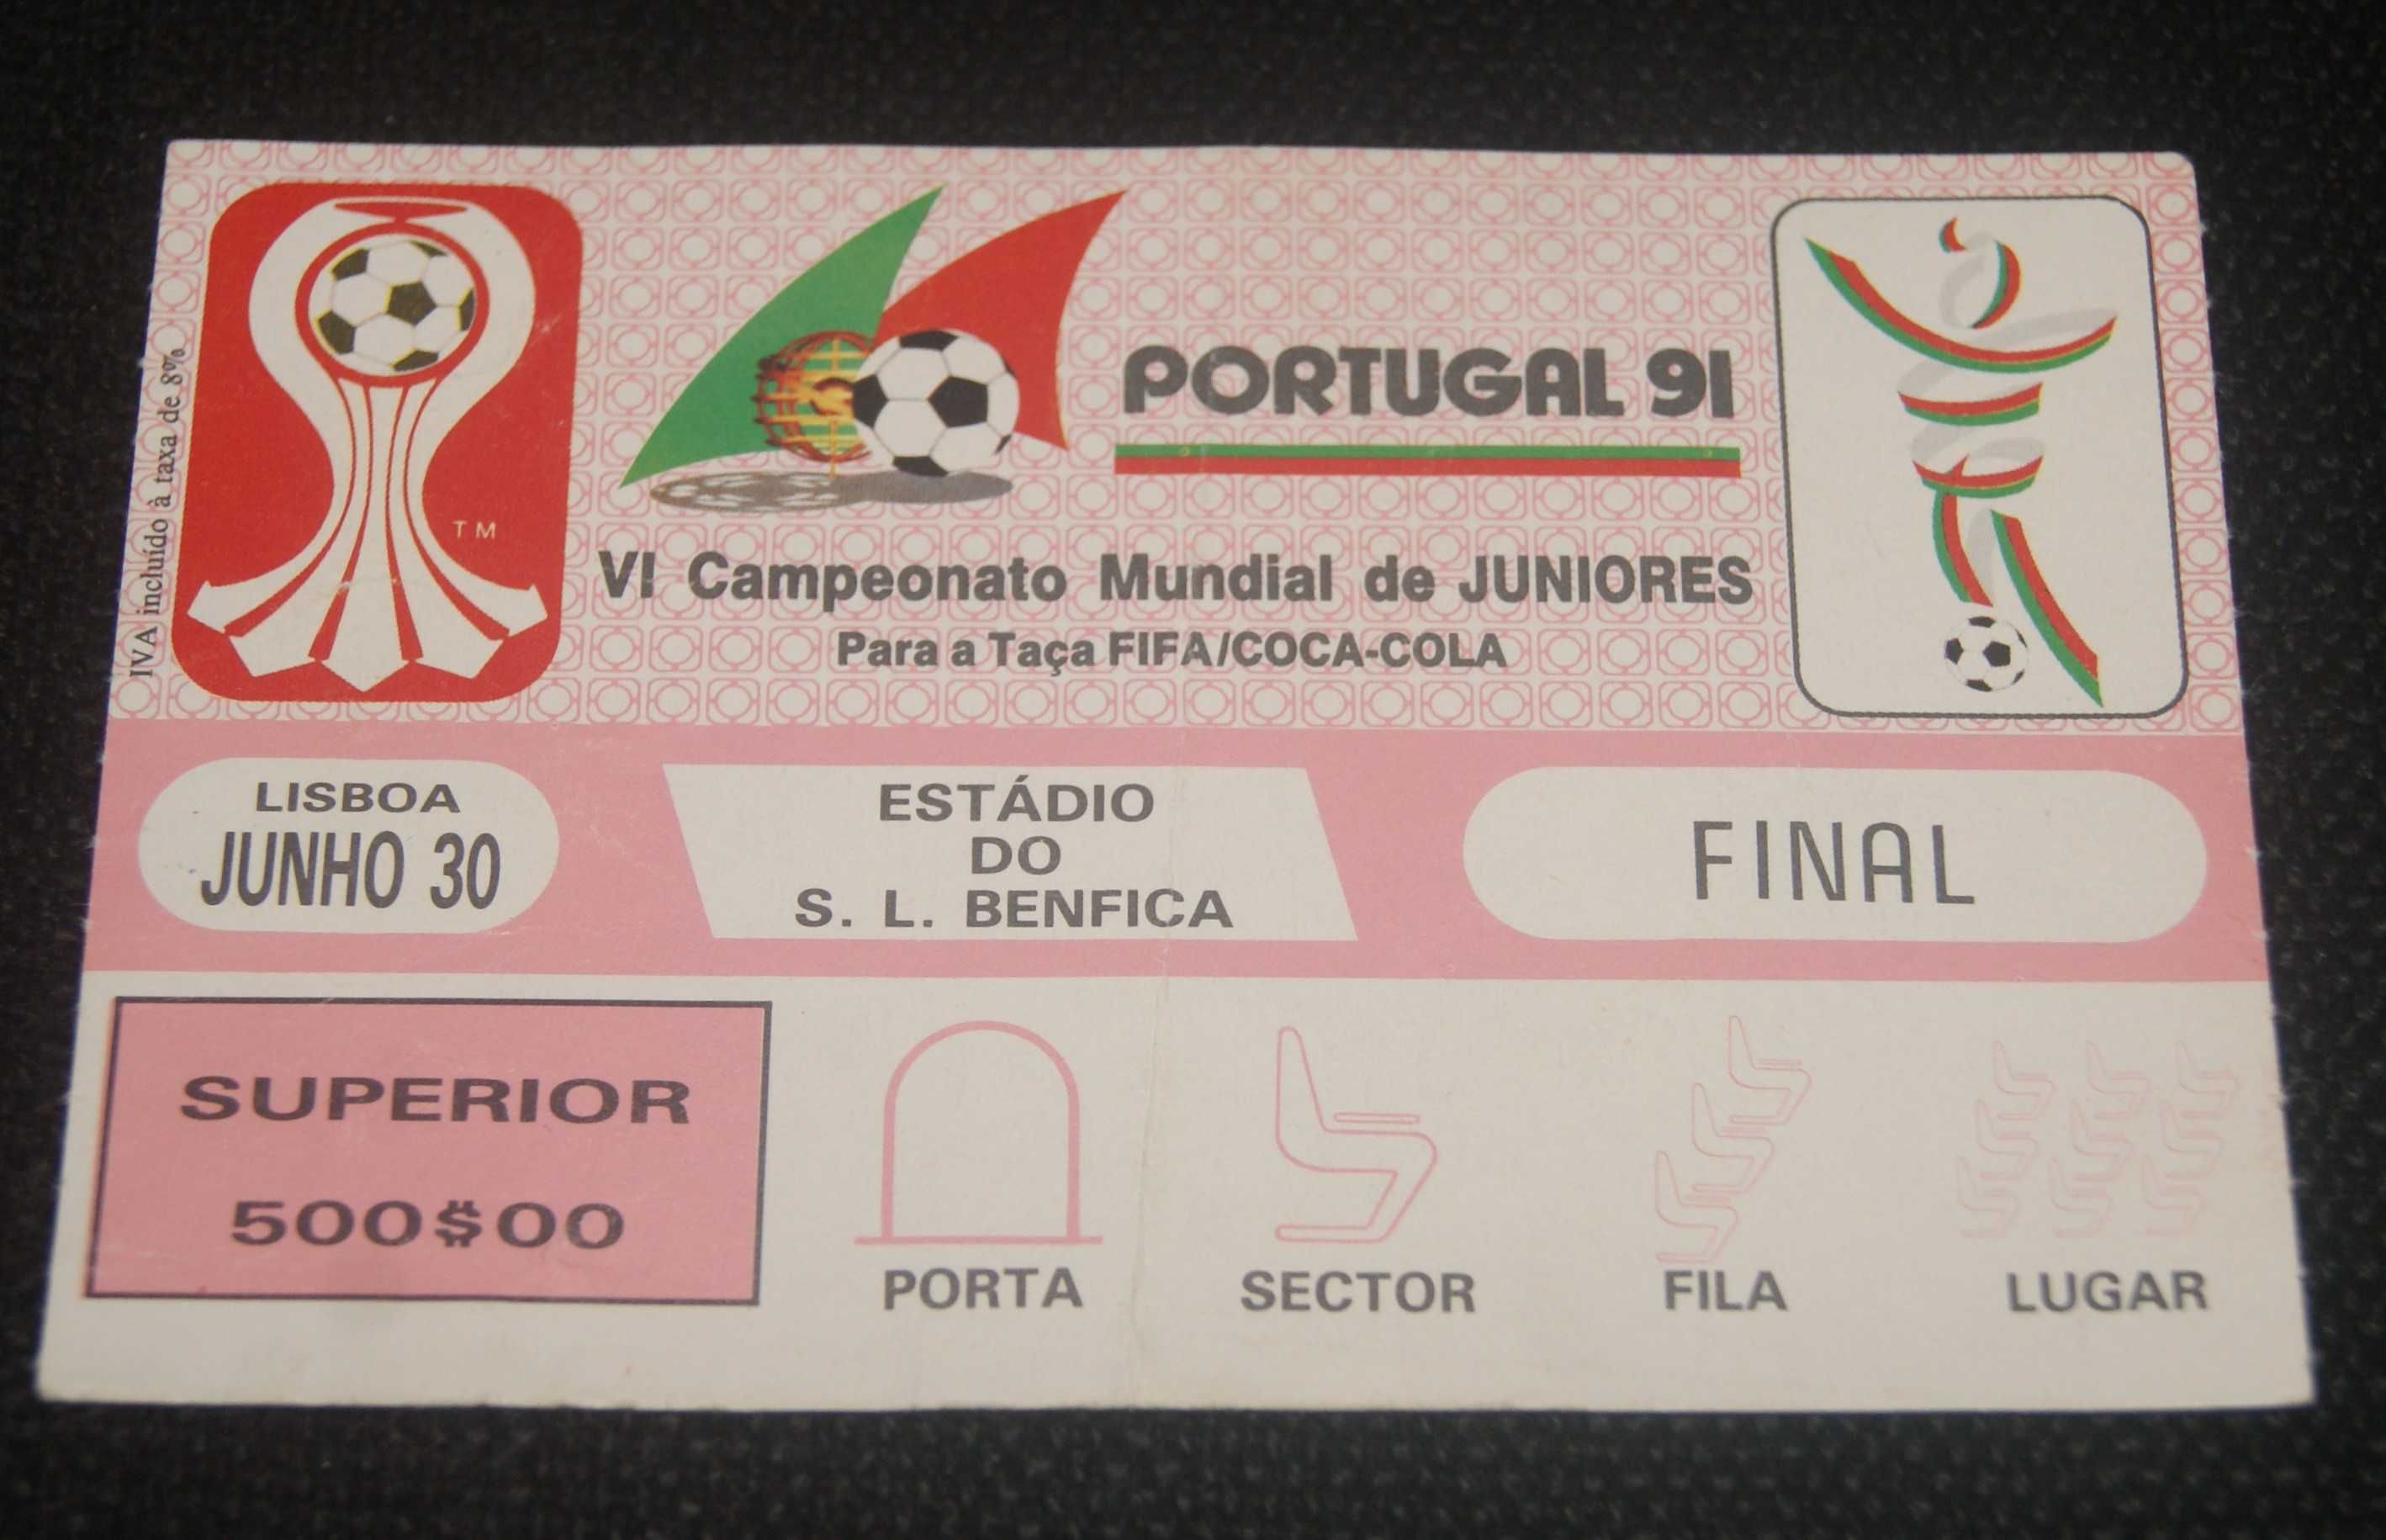 Bilhete da Final - VI Campeonato Mundial de Juniores - Portugal 91